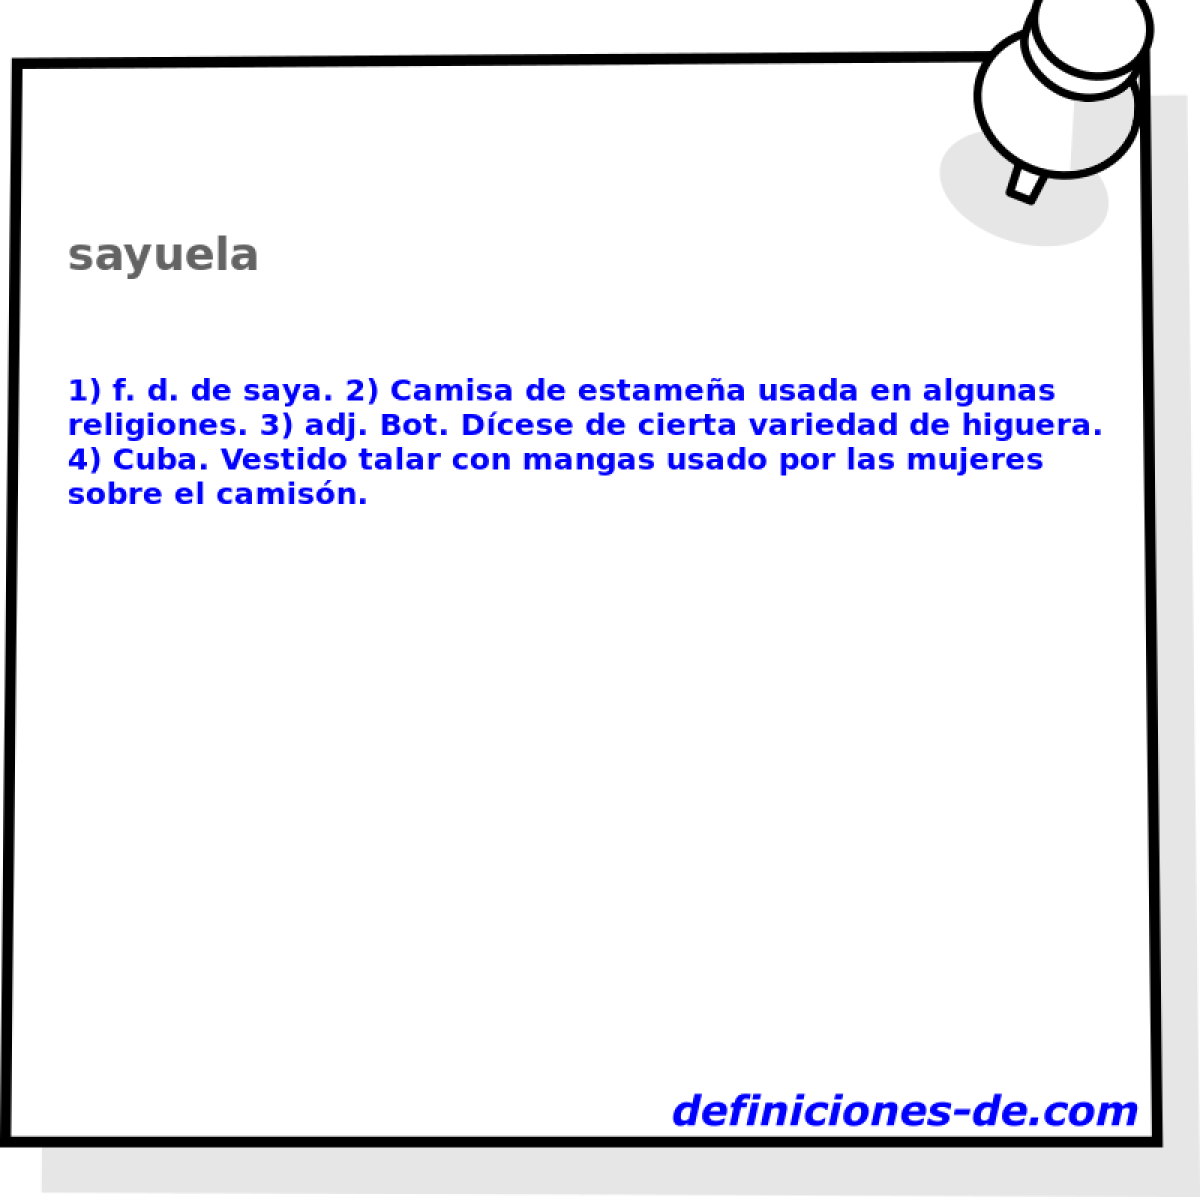 sayuela 